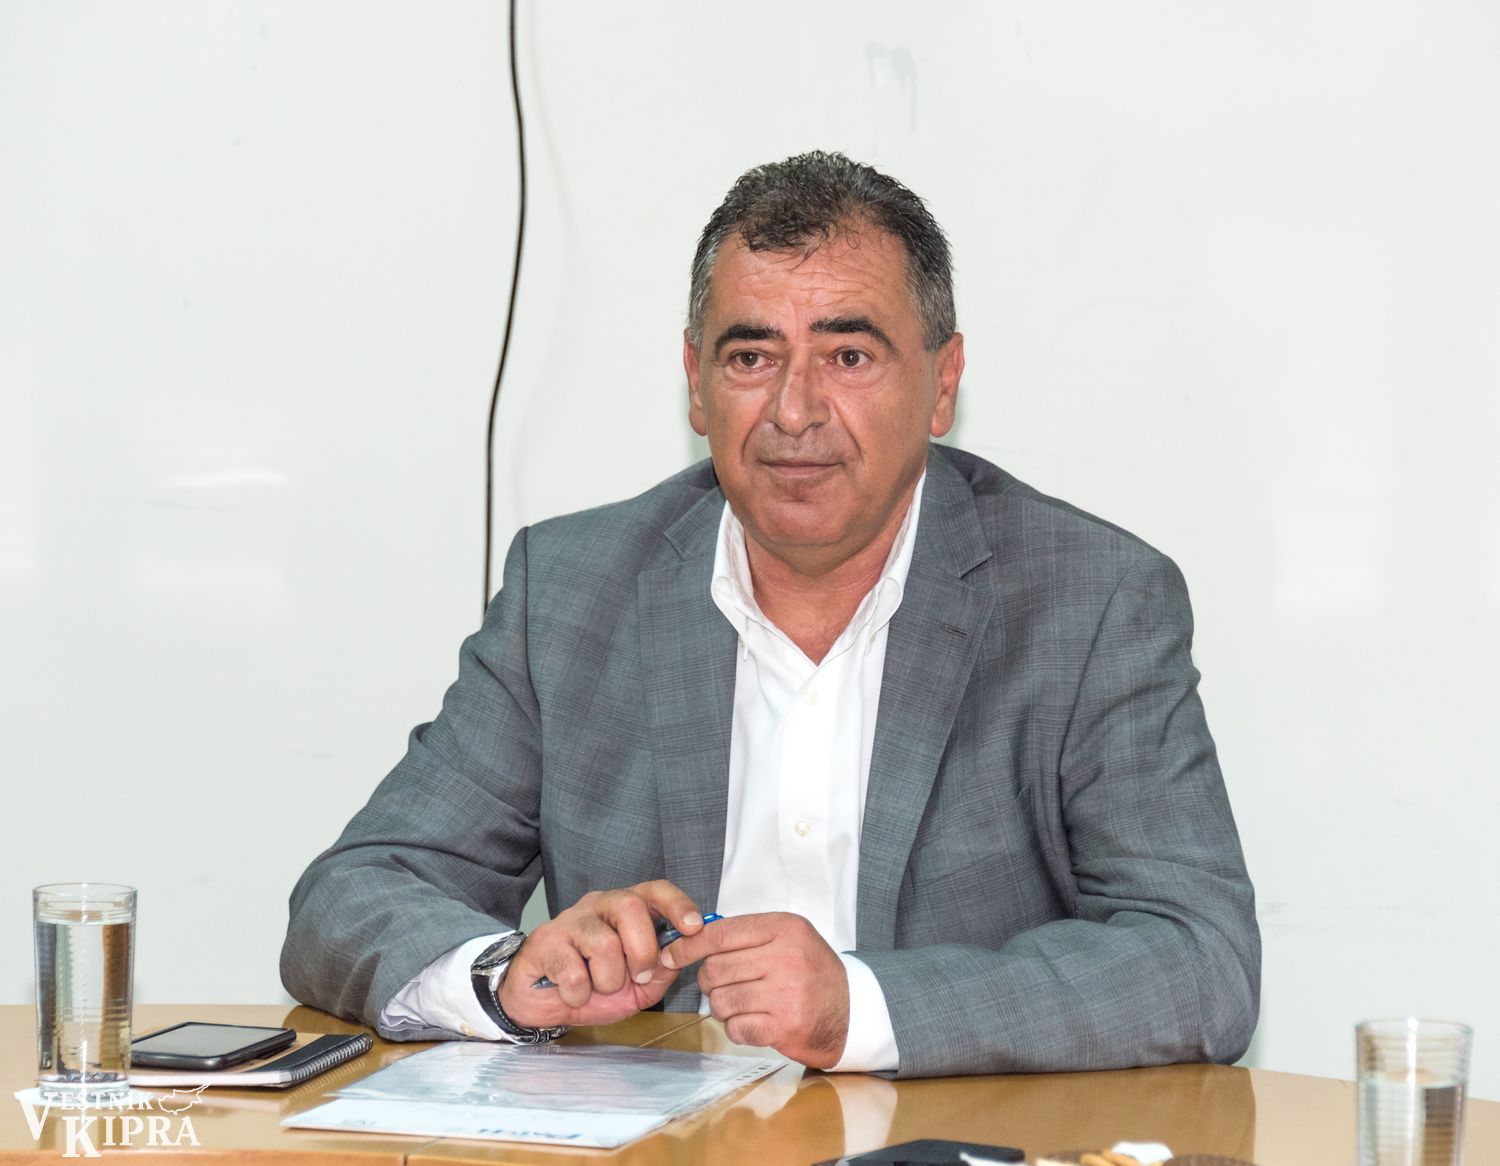 Мэр Агиос Афанасиос: наш район — лучший в Лимассоле - Вестник Кипра